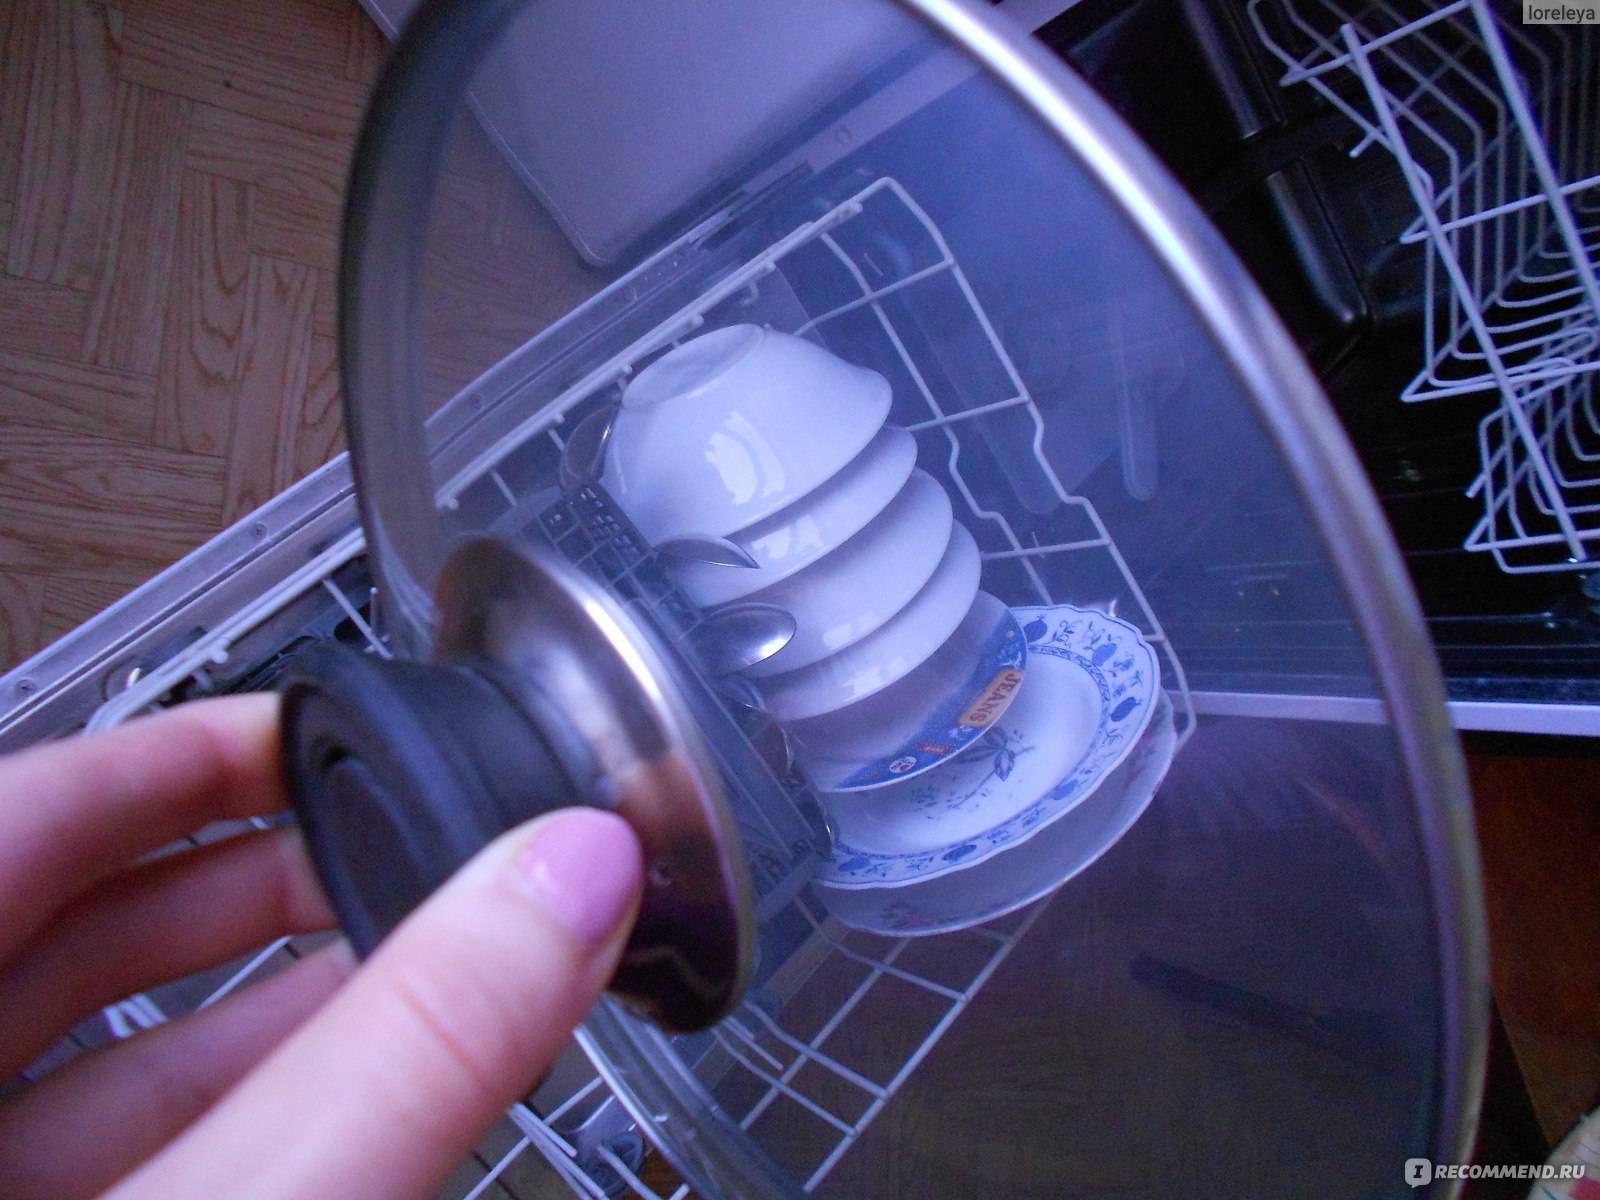 Посудомоечная машина плохо моет, в чем причина